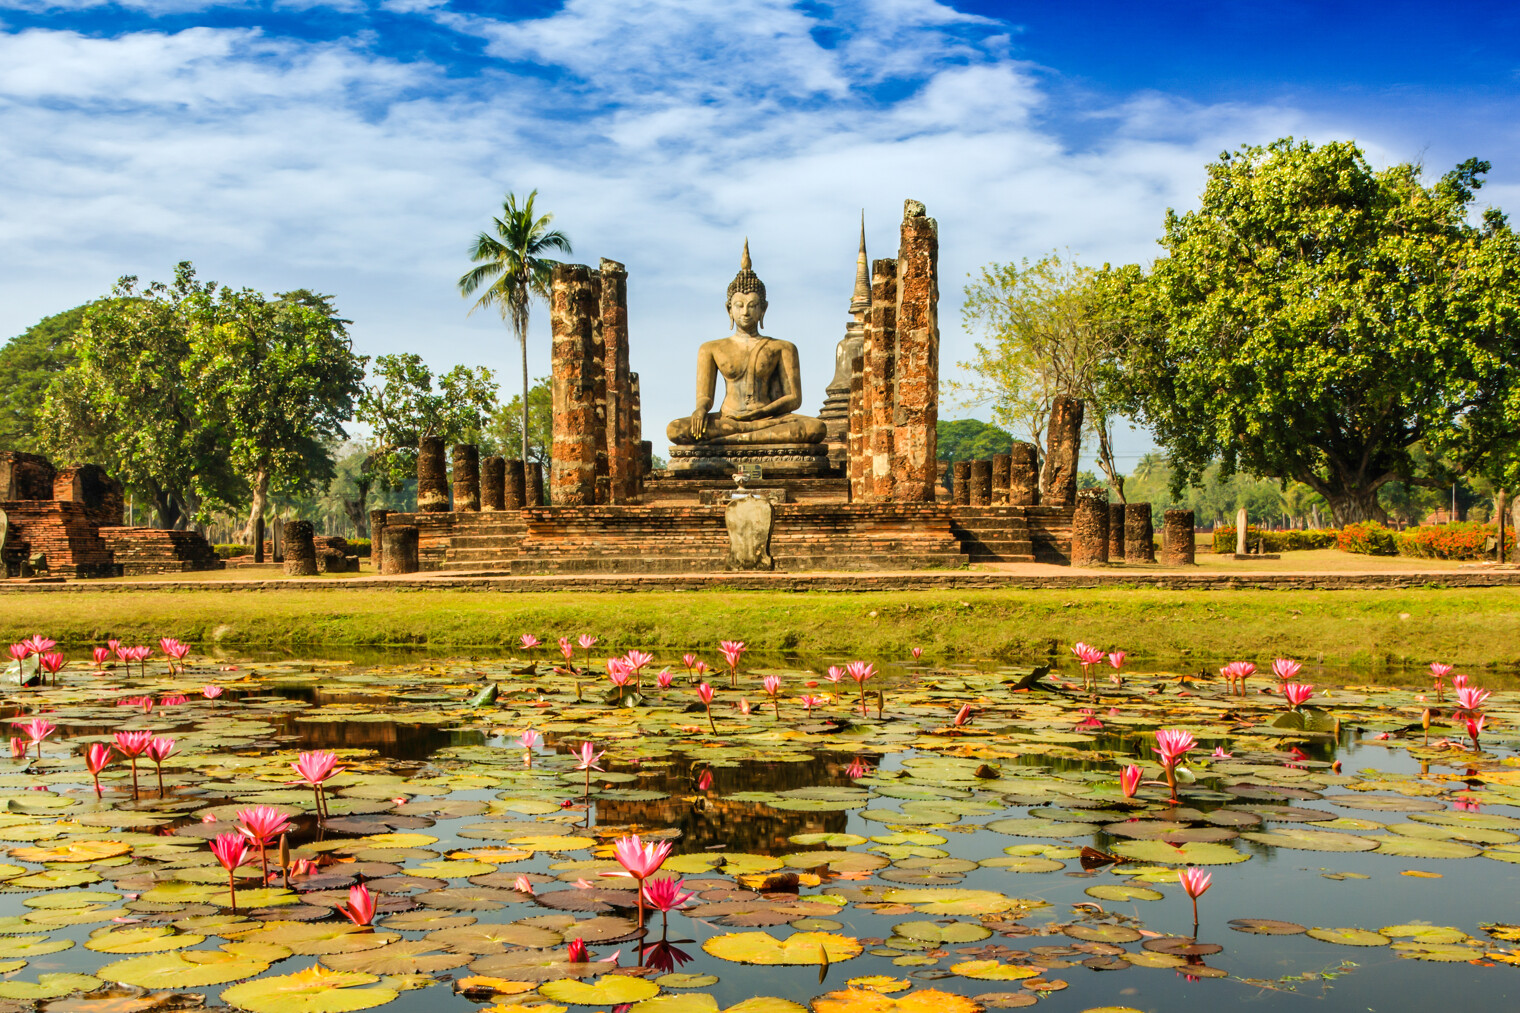 La statut de Bouddha à Wat Mahathat dans le parc de Sukhothai en Thaïlande